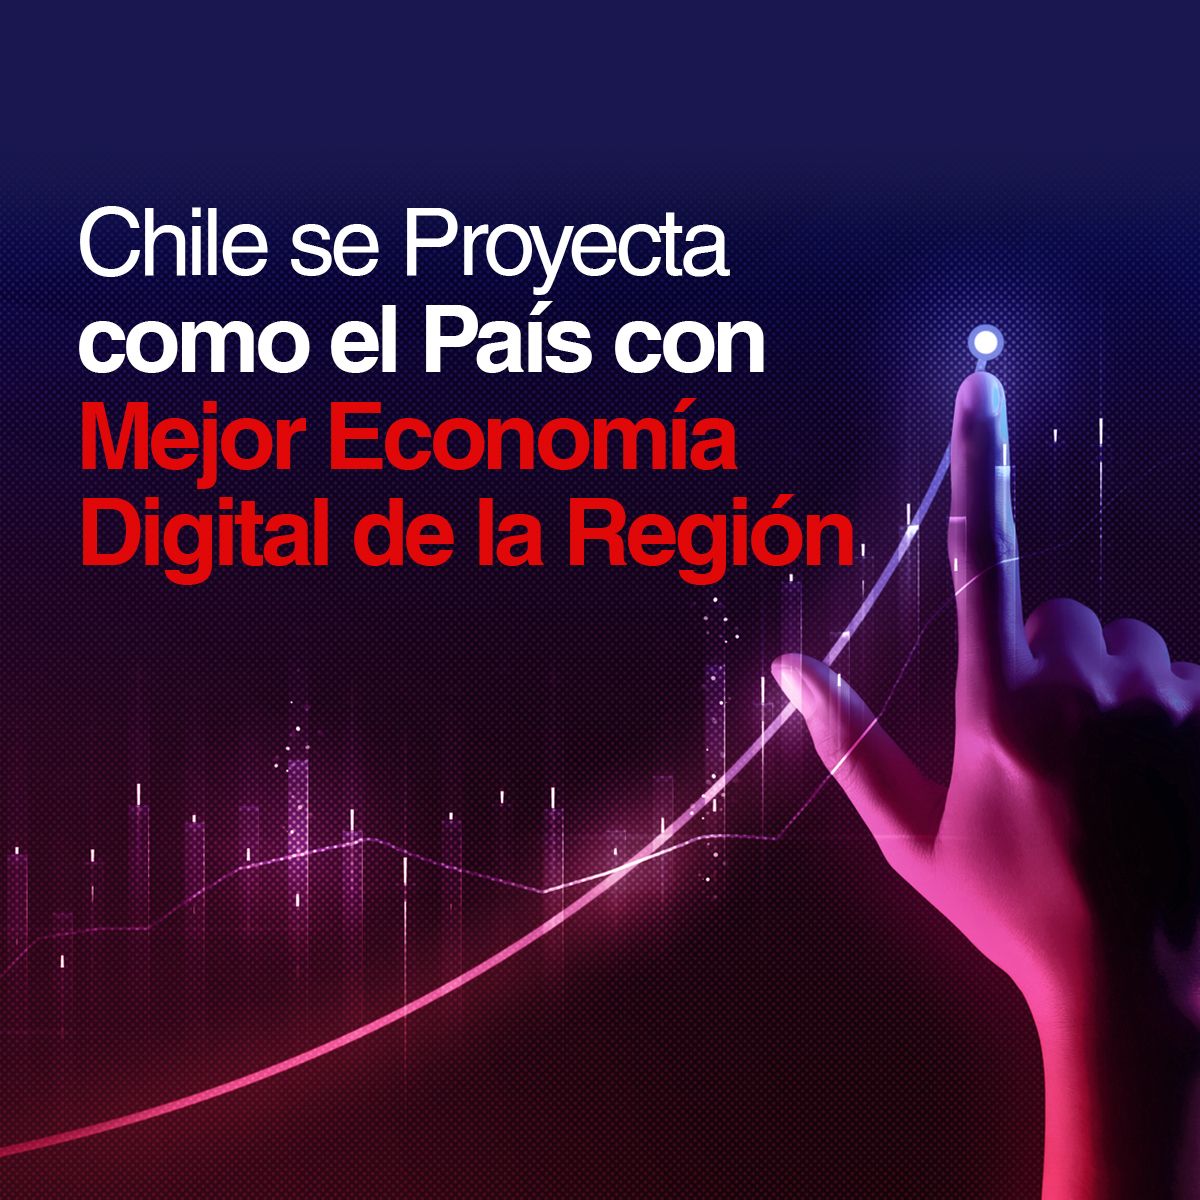 Chile se Proyecta como el País con Mejor Economía Digital de la Región